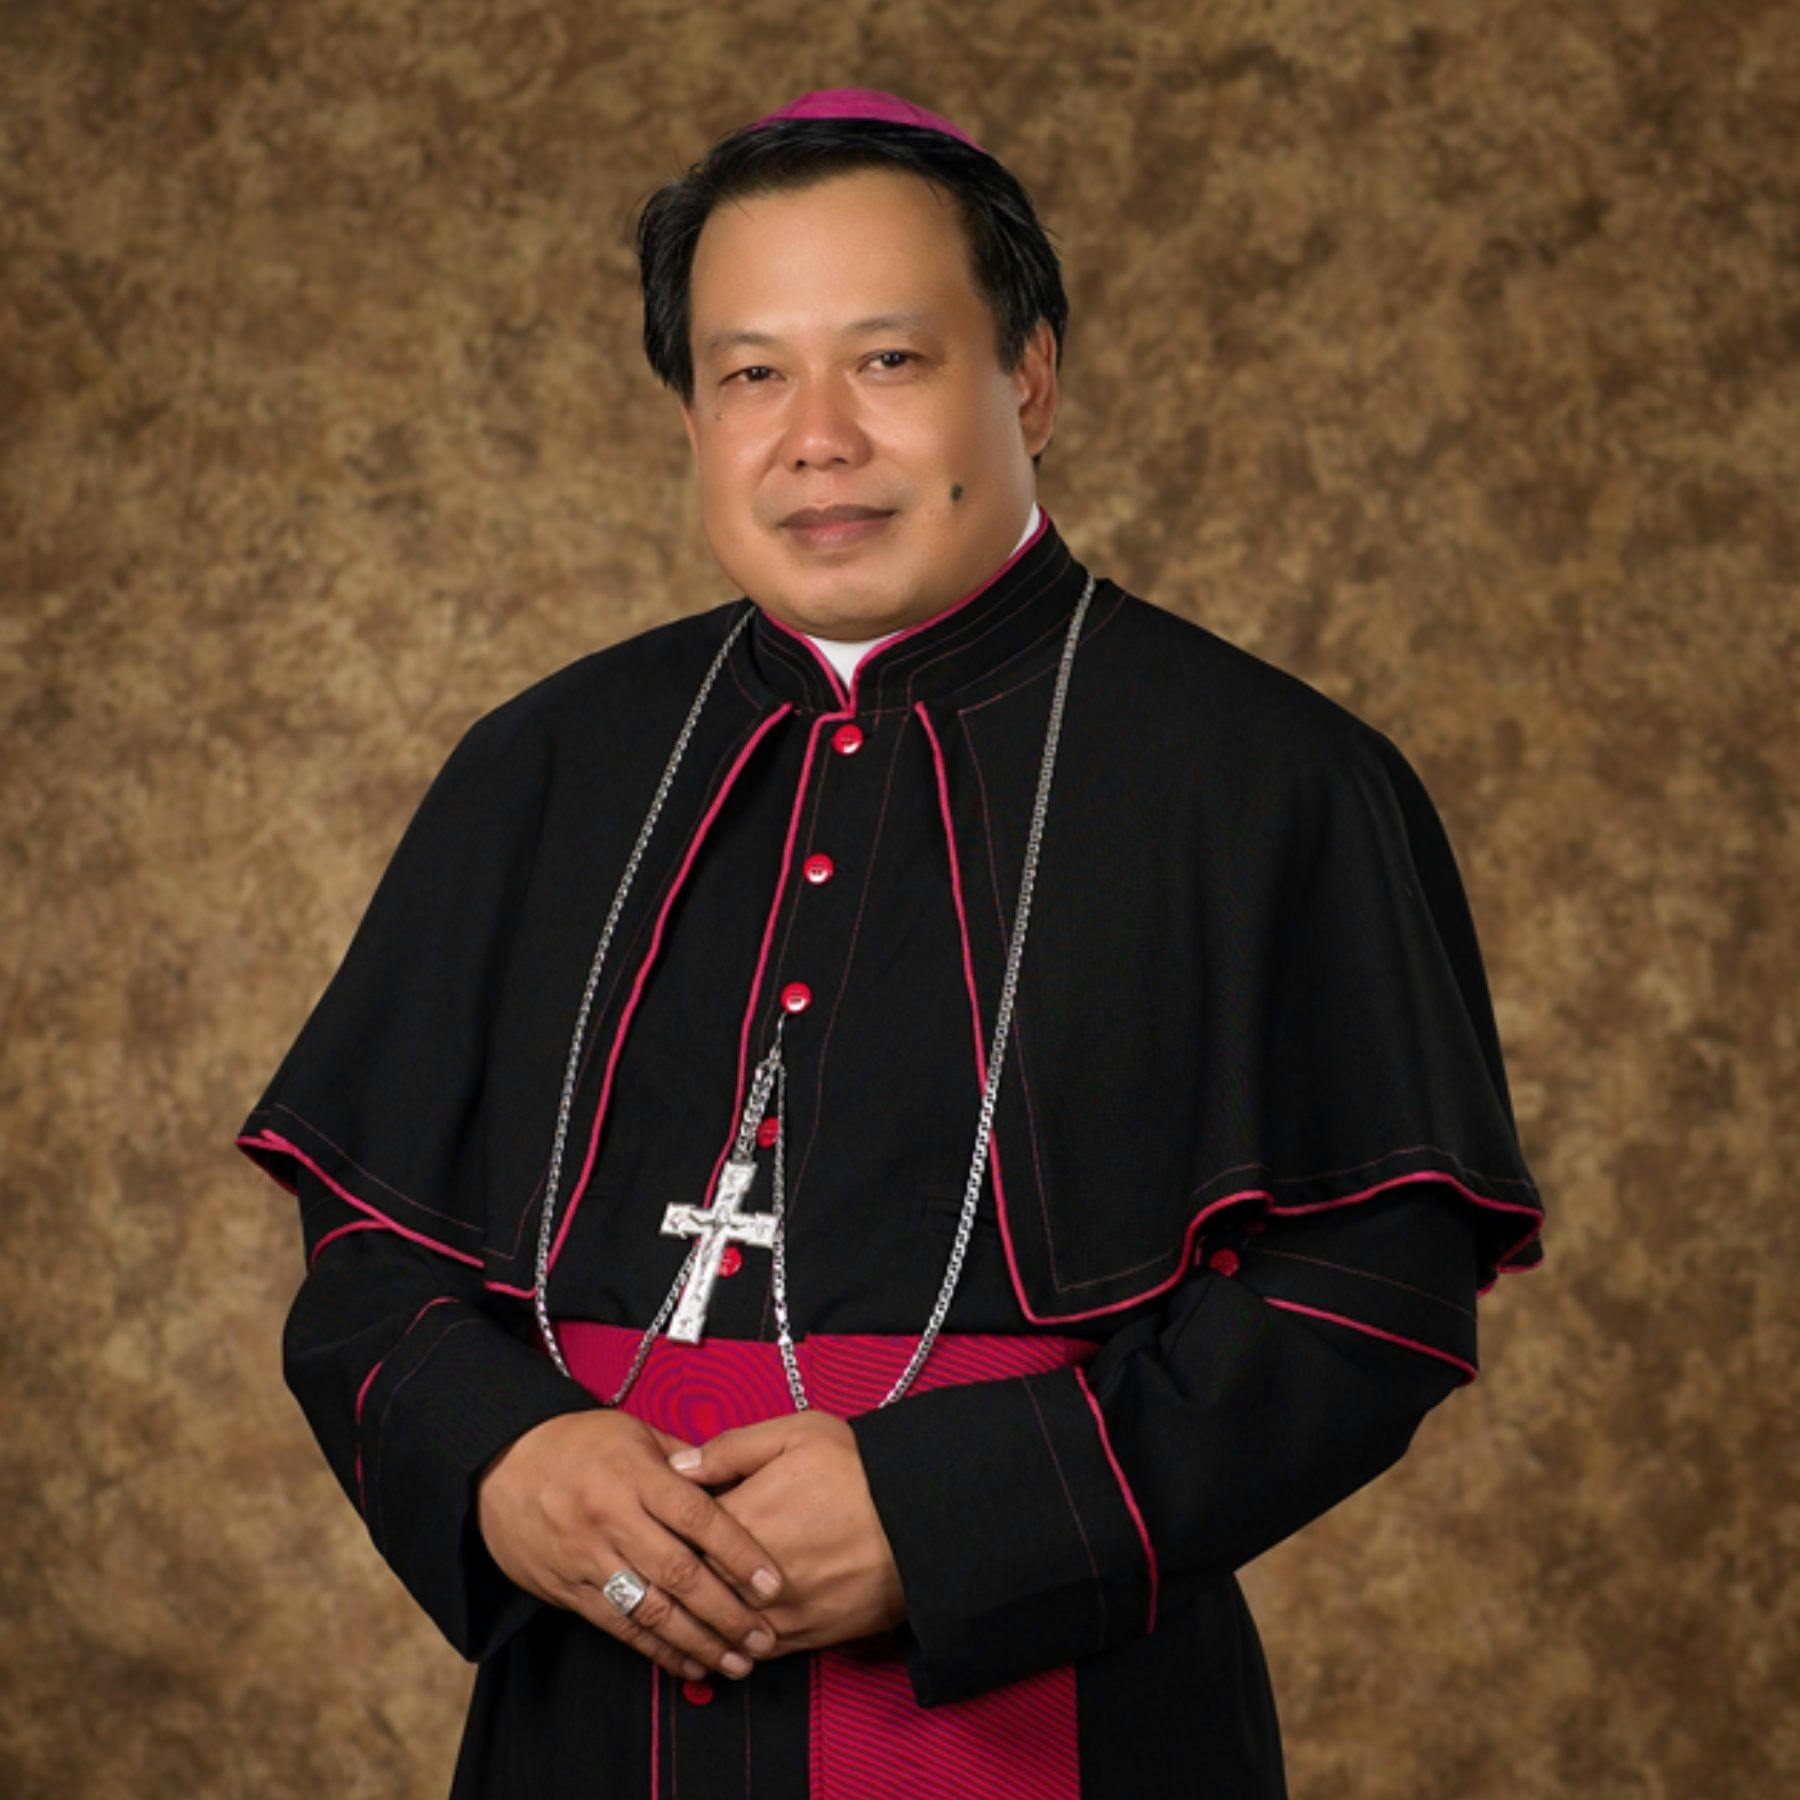 bishop catholic Vincent Sutikno Wisaksono